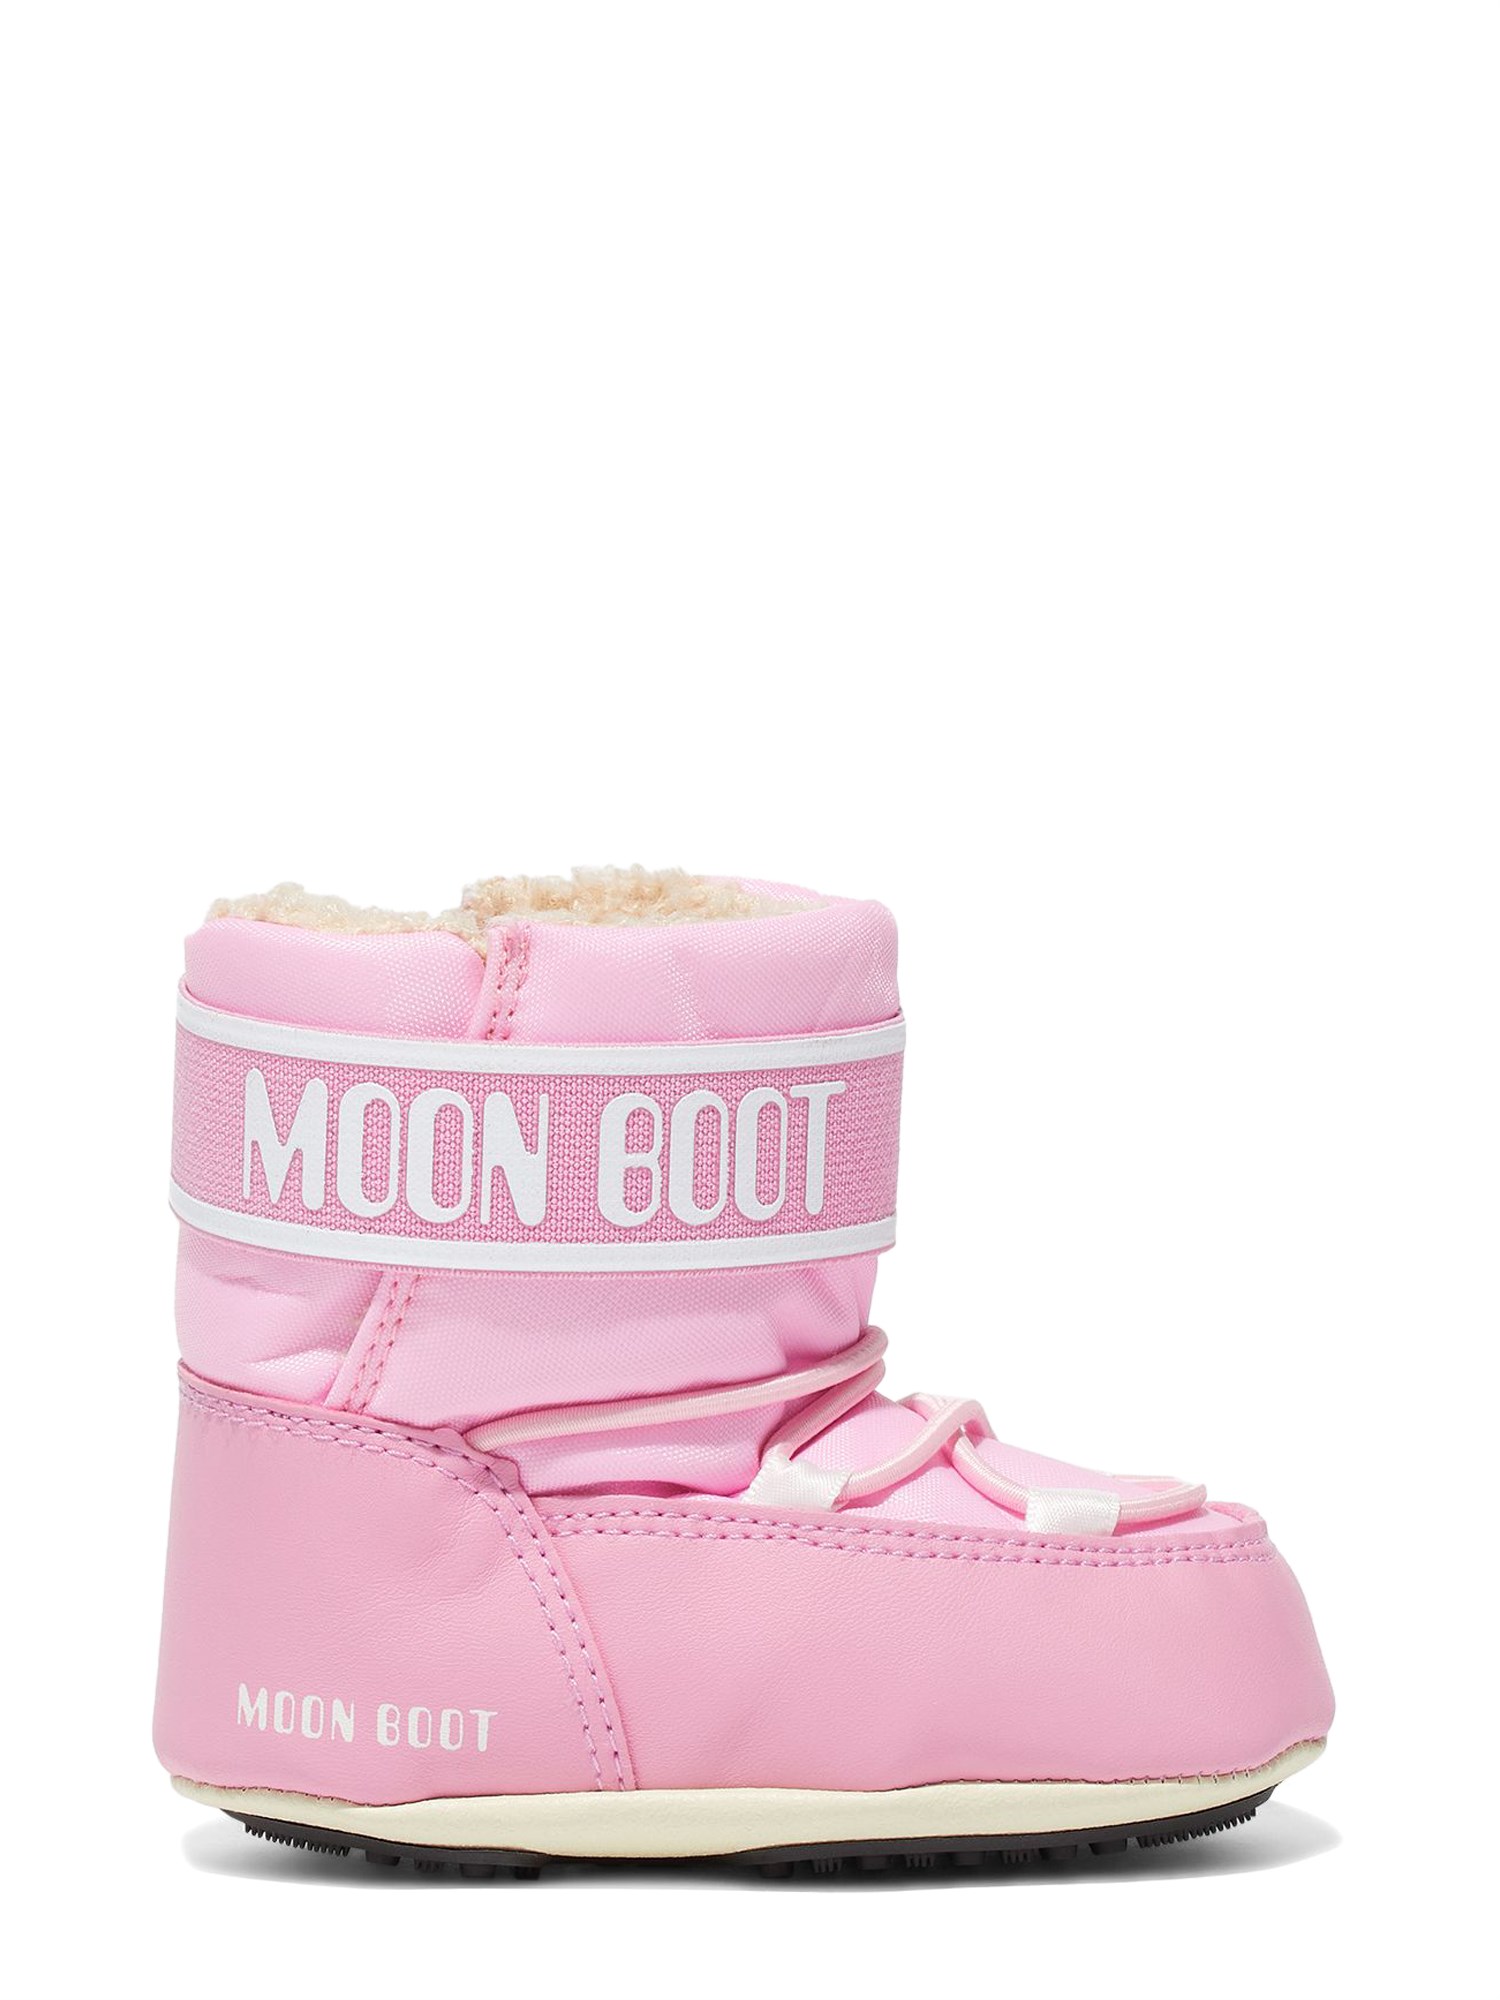 Moon Boot moon boot moon boot crib